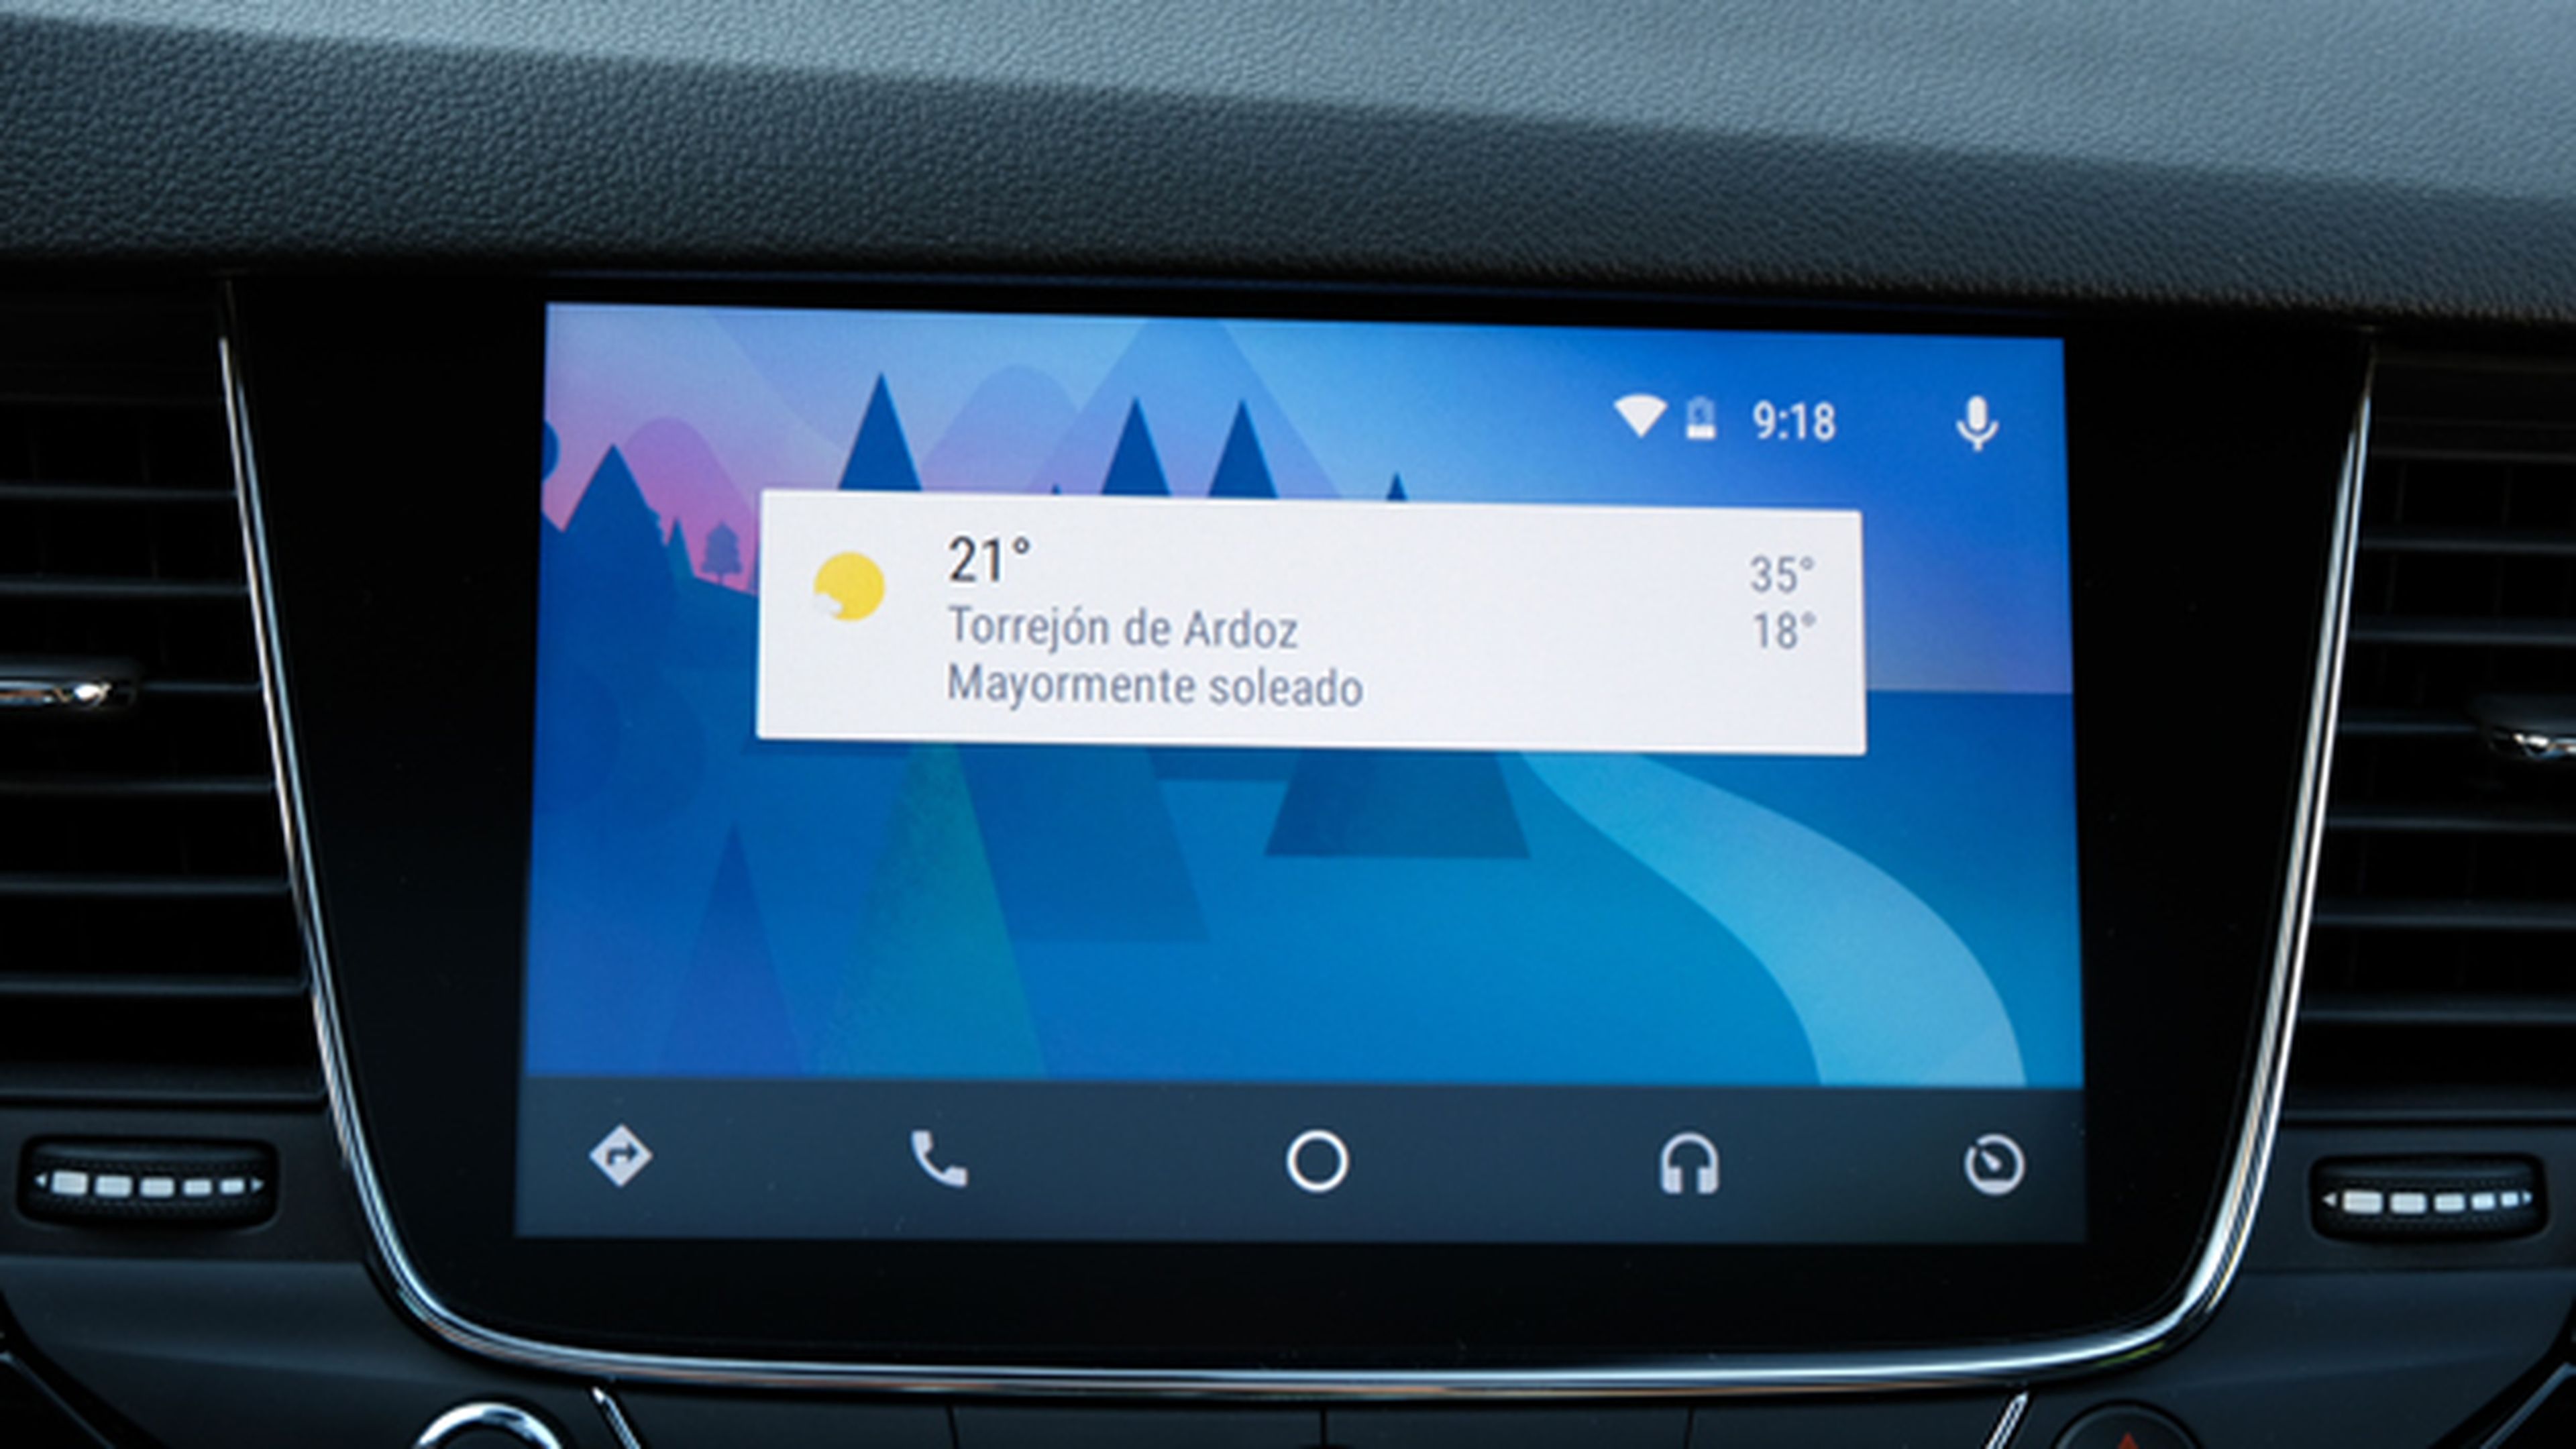 La interfaz de Android Auto en el Opel Astra